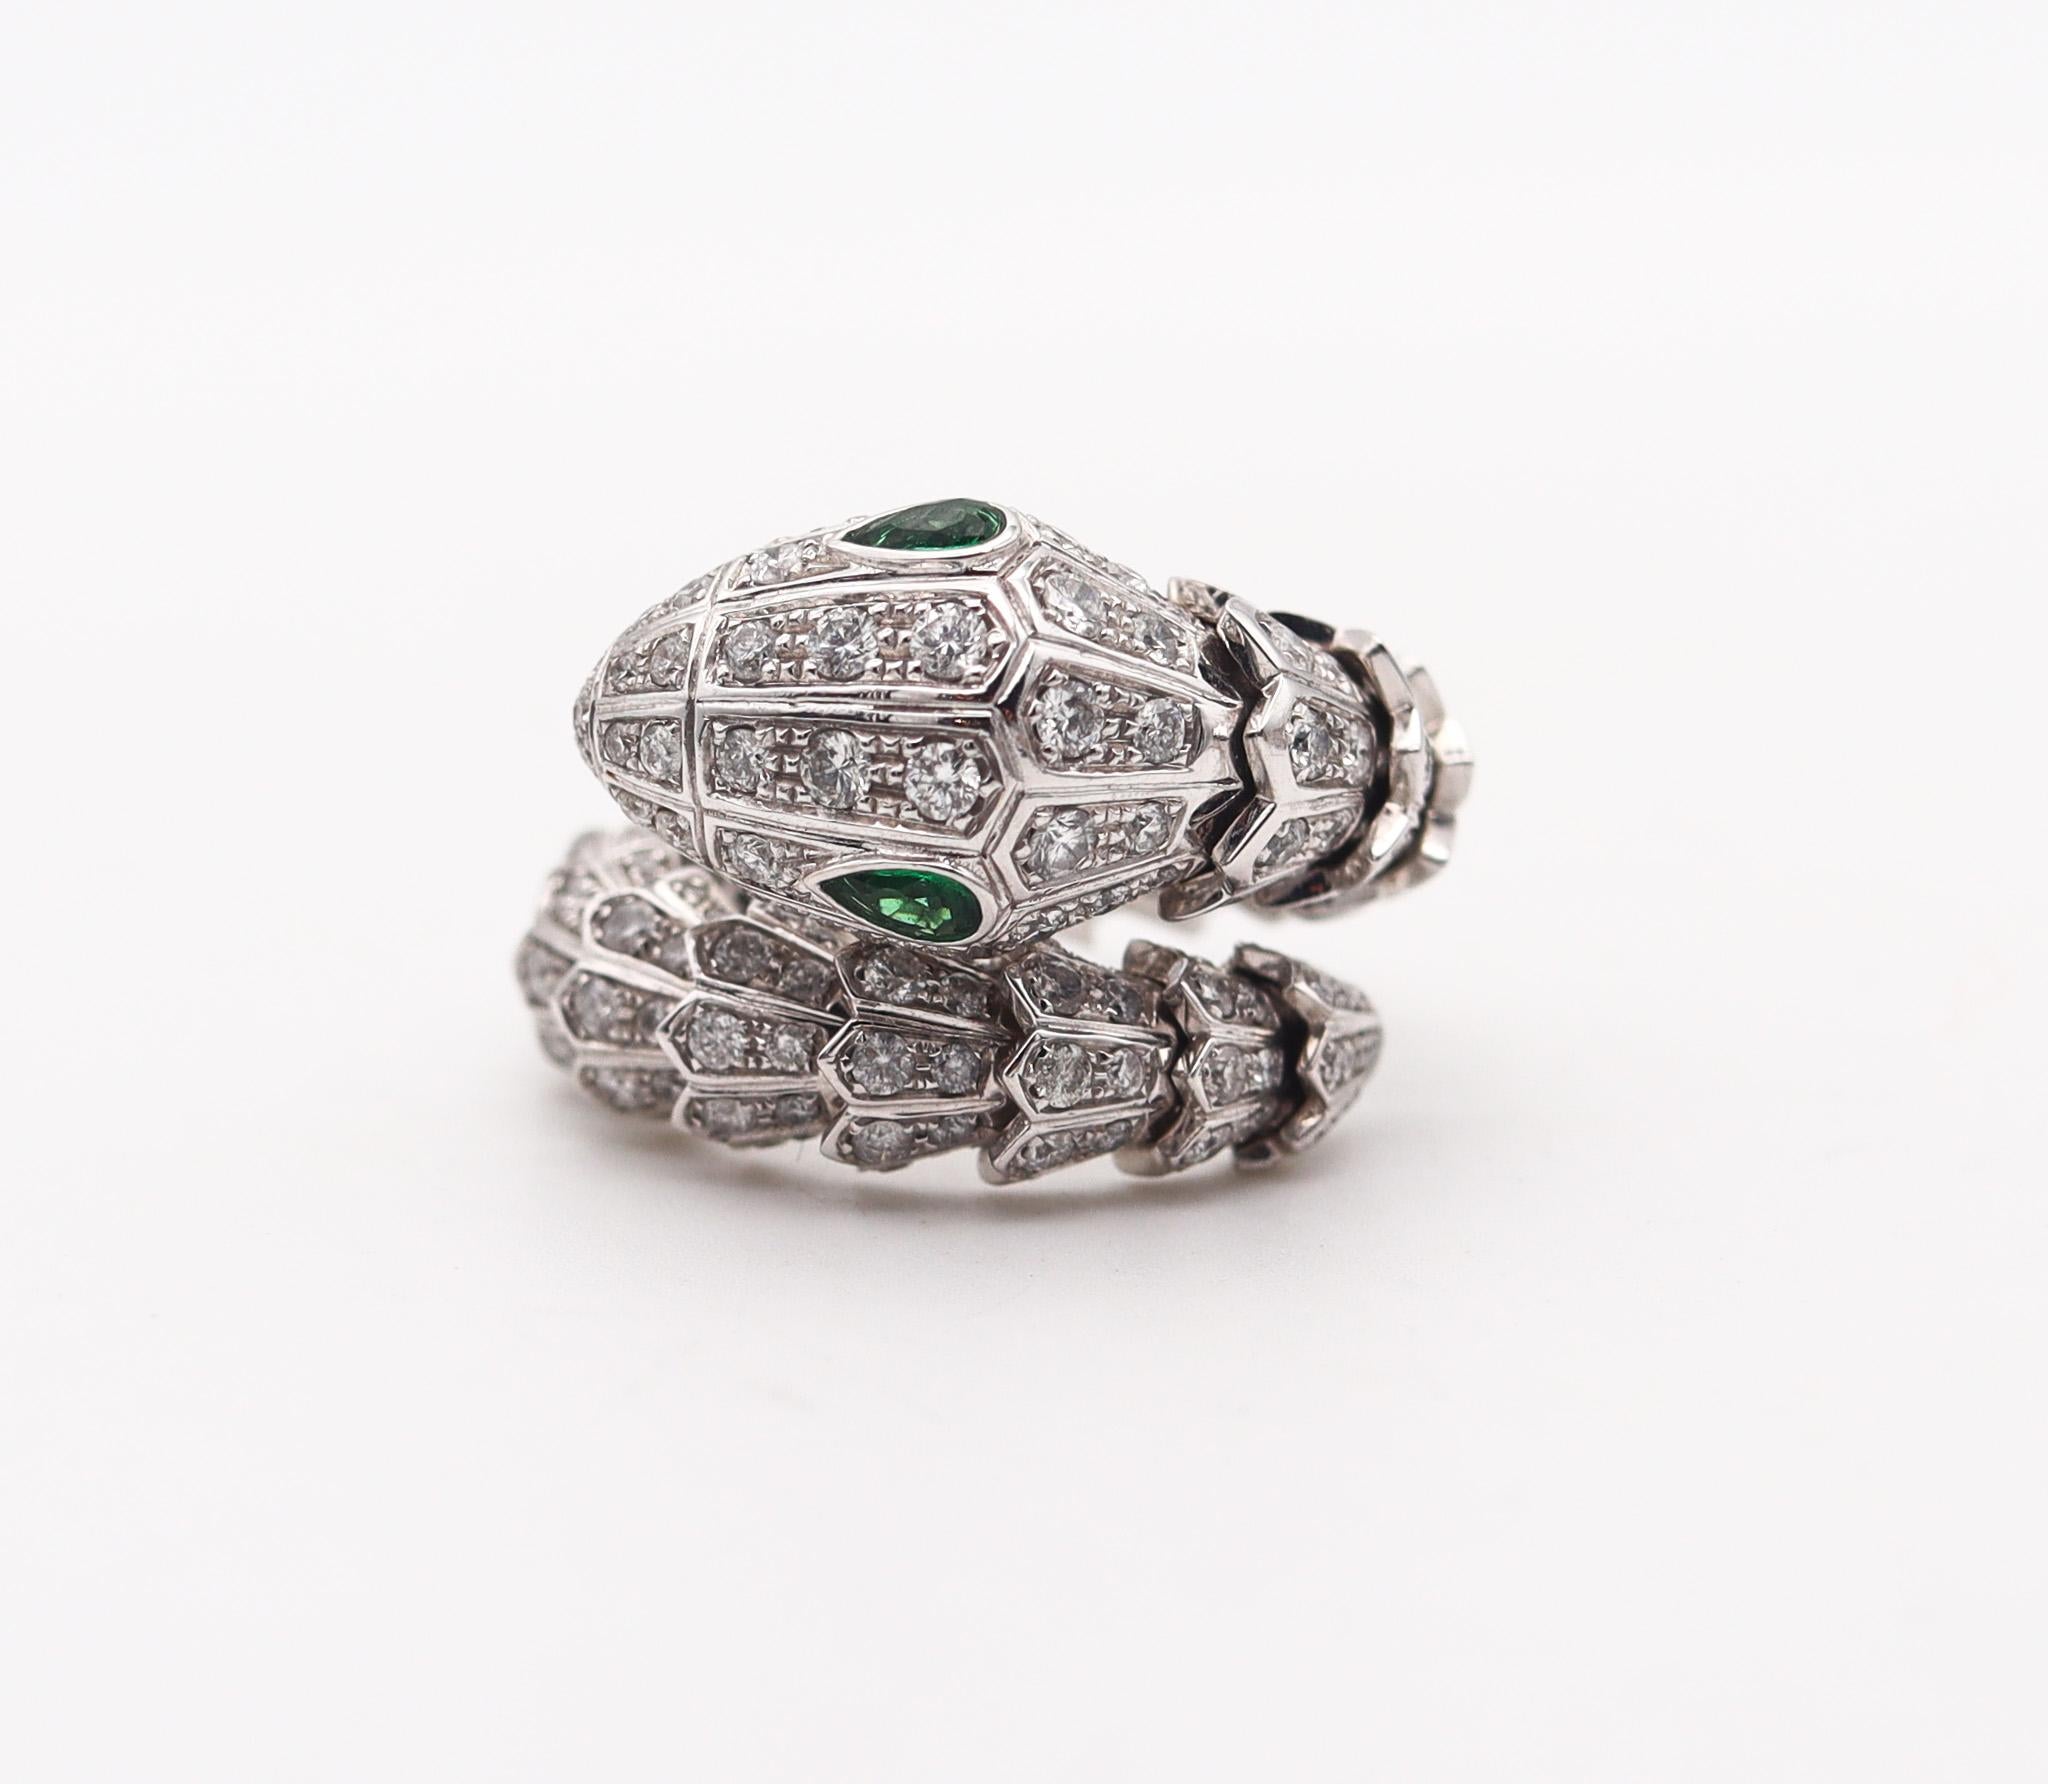 Un anello flessibile Serpenti incastonato di gemme, disegnato da Bvlgari.

Questo anello è un gioiello eccezionale, creato a Roma dall'iconica casa di gioielli Bvlgari. Questo raro anello Serpenti fa parte della Bvlgari Prestige Collection ed è